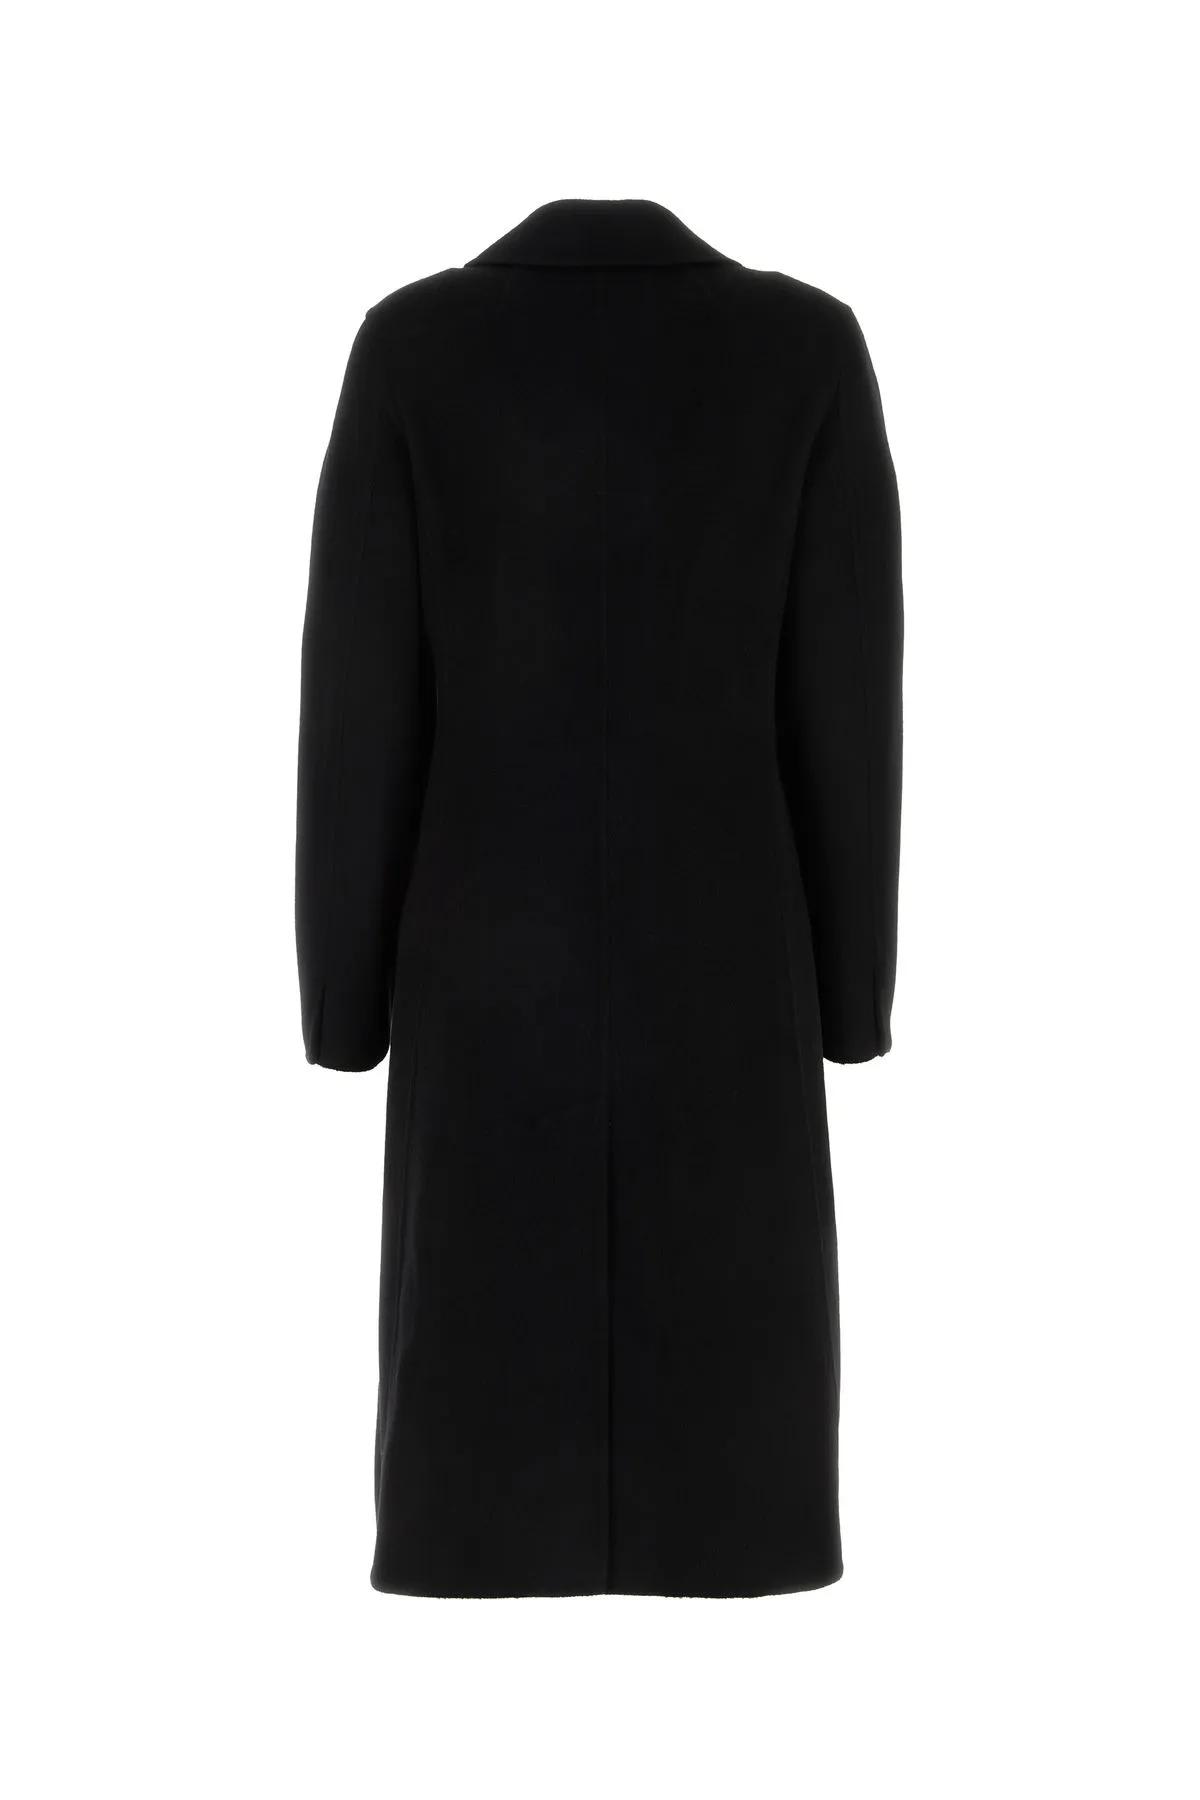 Shop Lanvin Black Cashmere Coat